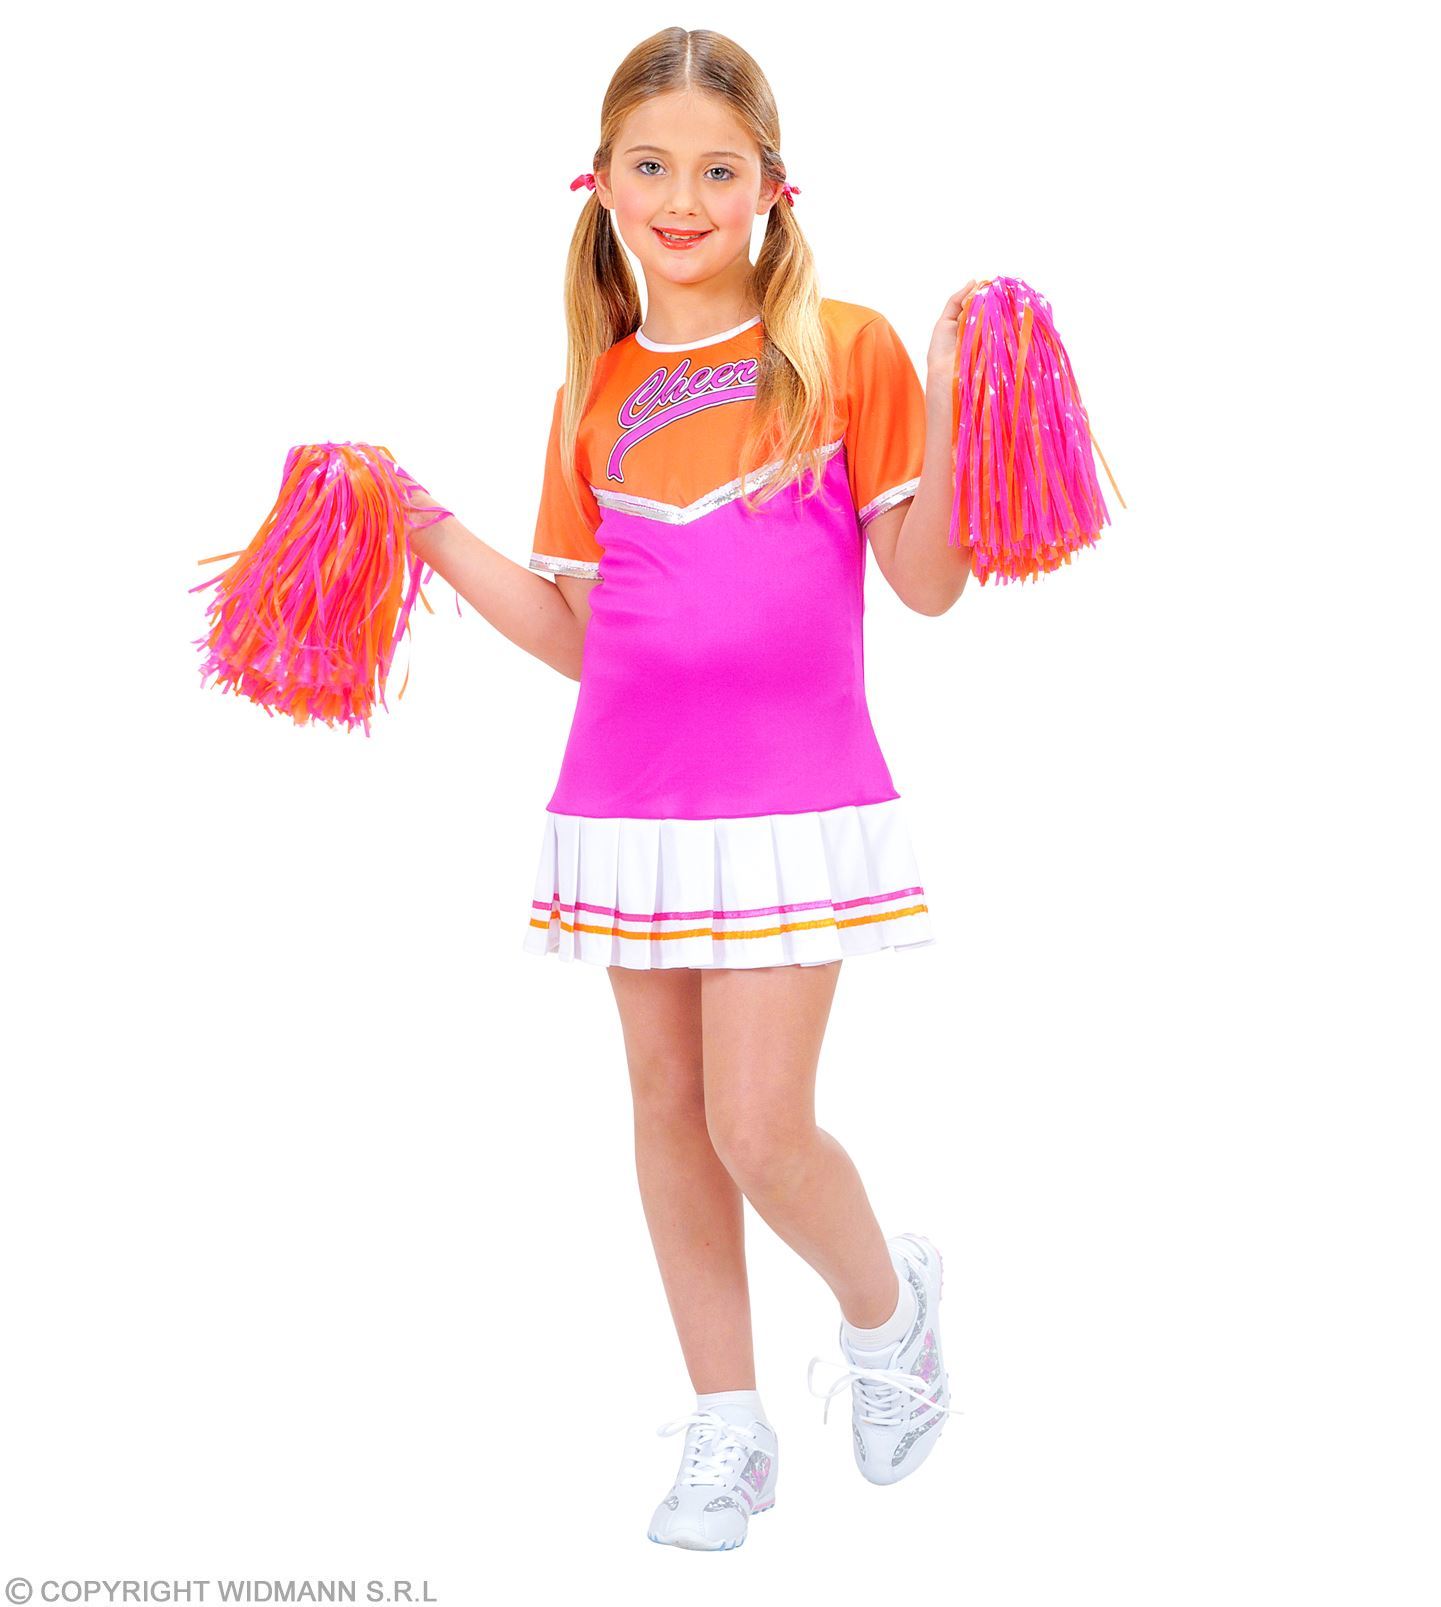 Cheerleader kostuum kind oranje met roze